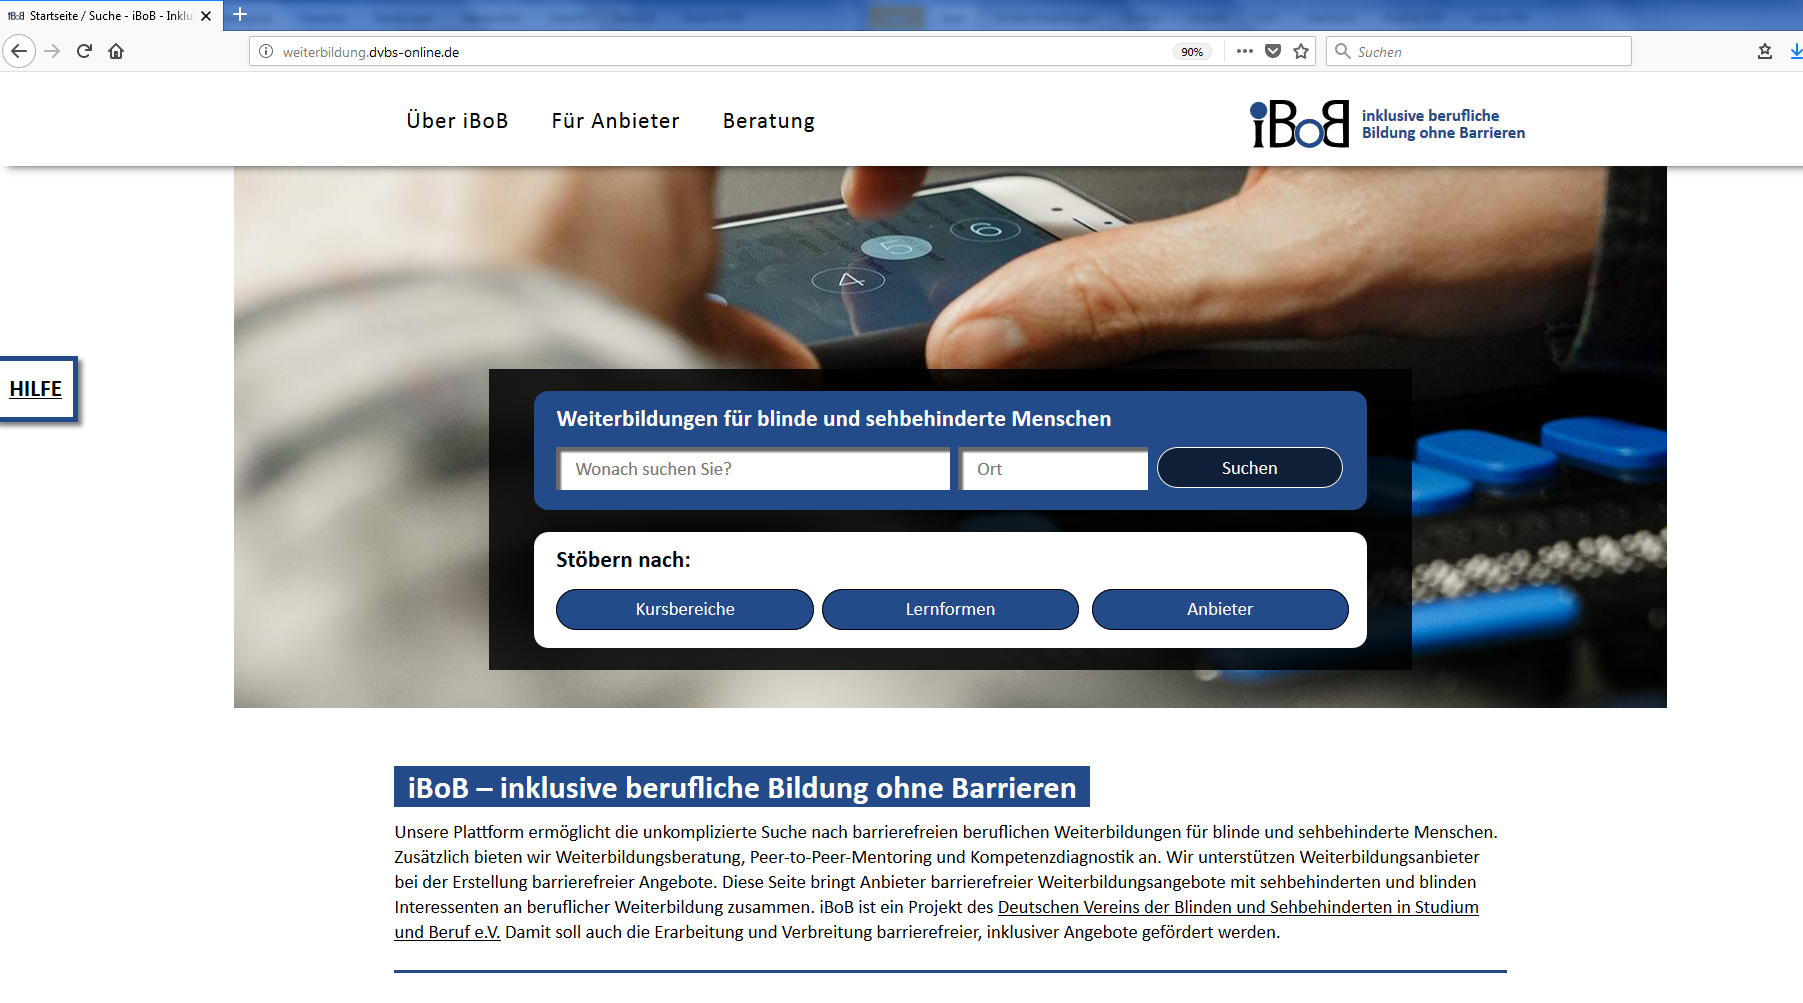 Screenshot der Internetseite zum iBoB-Projekt